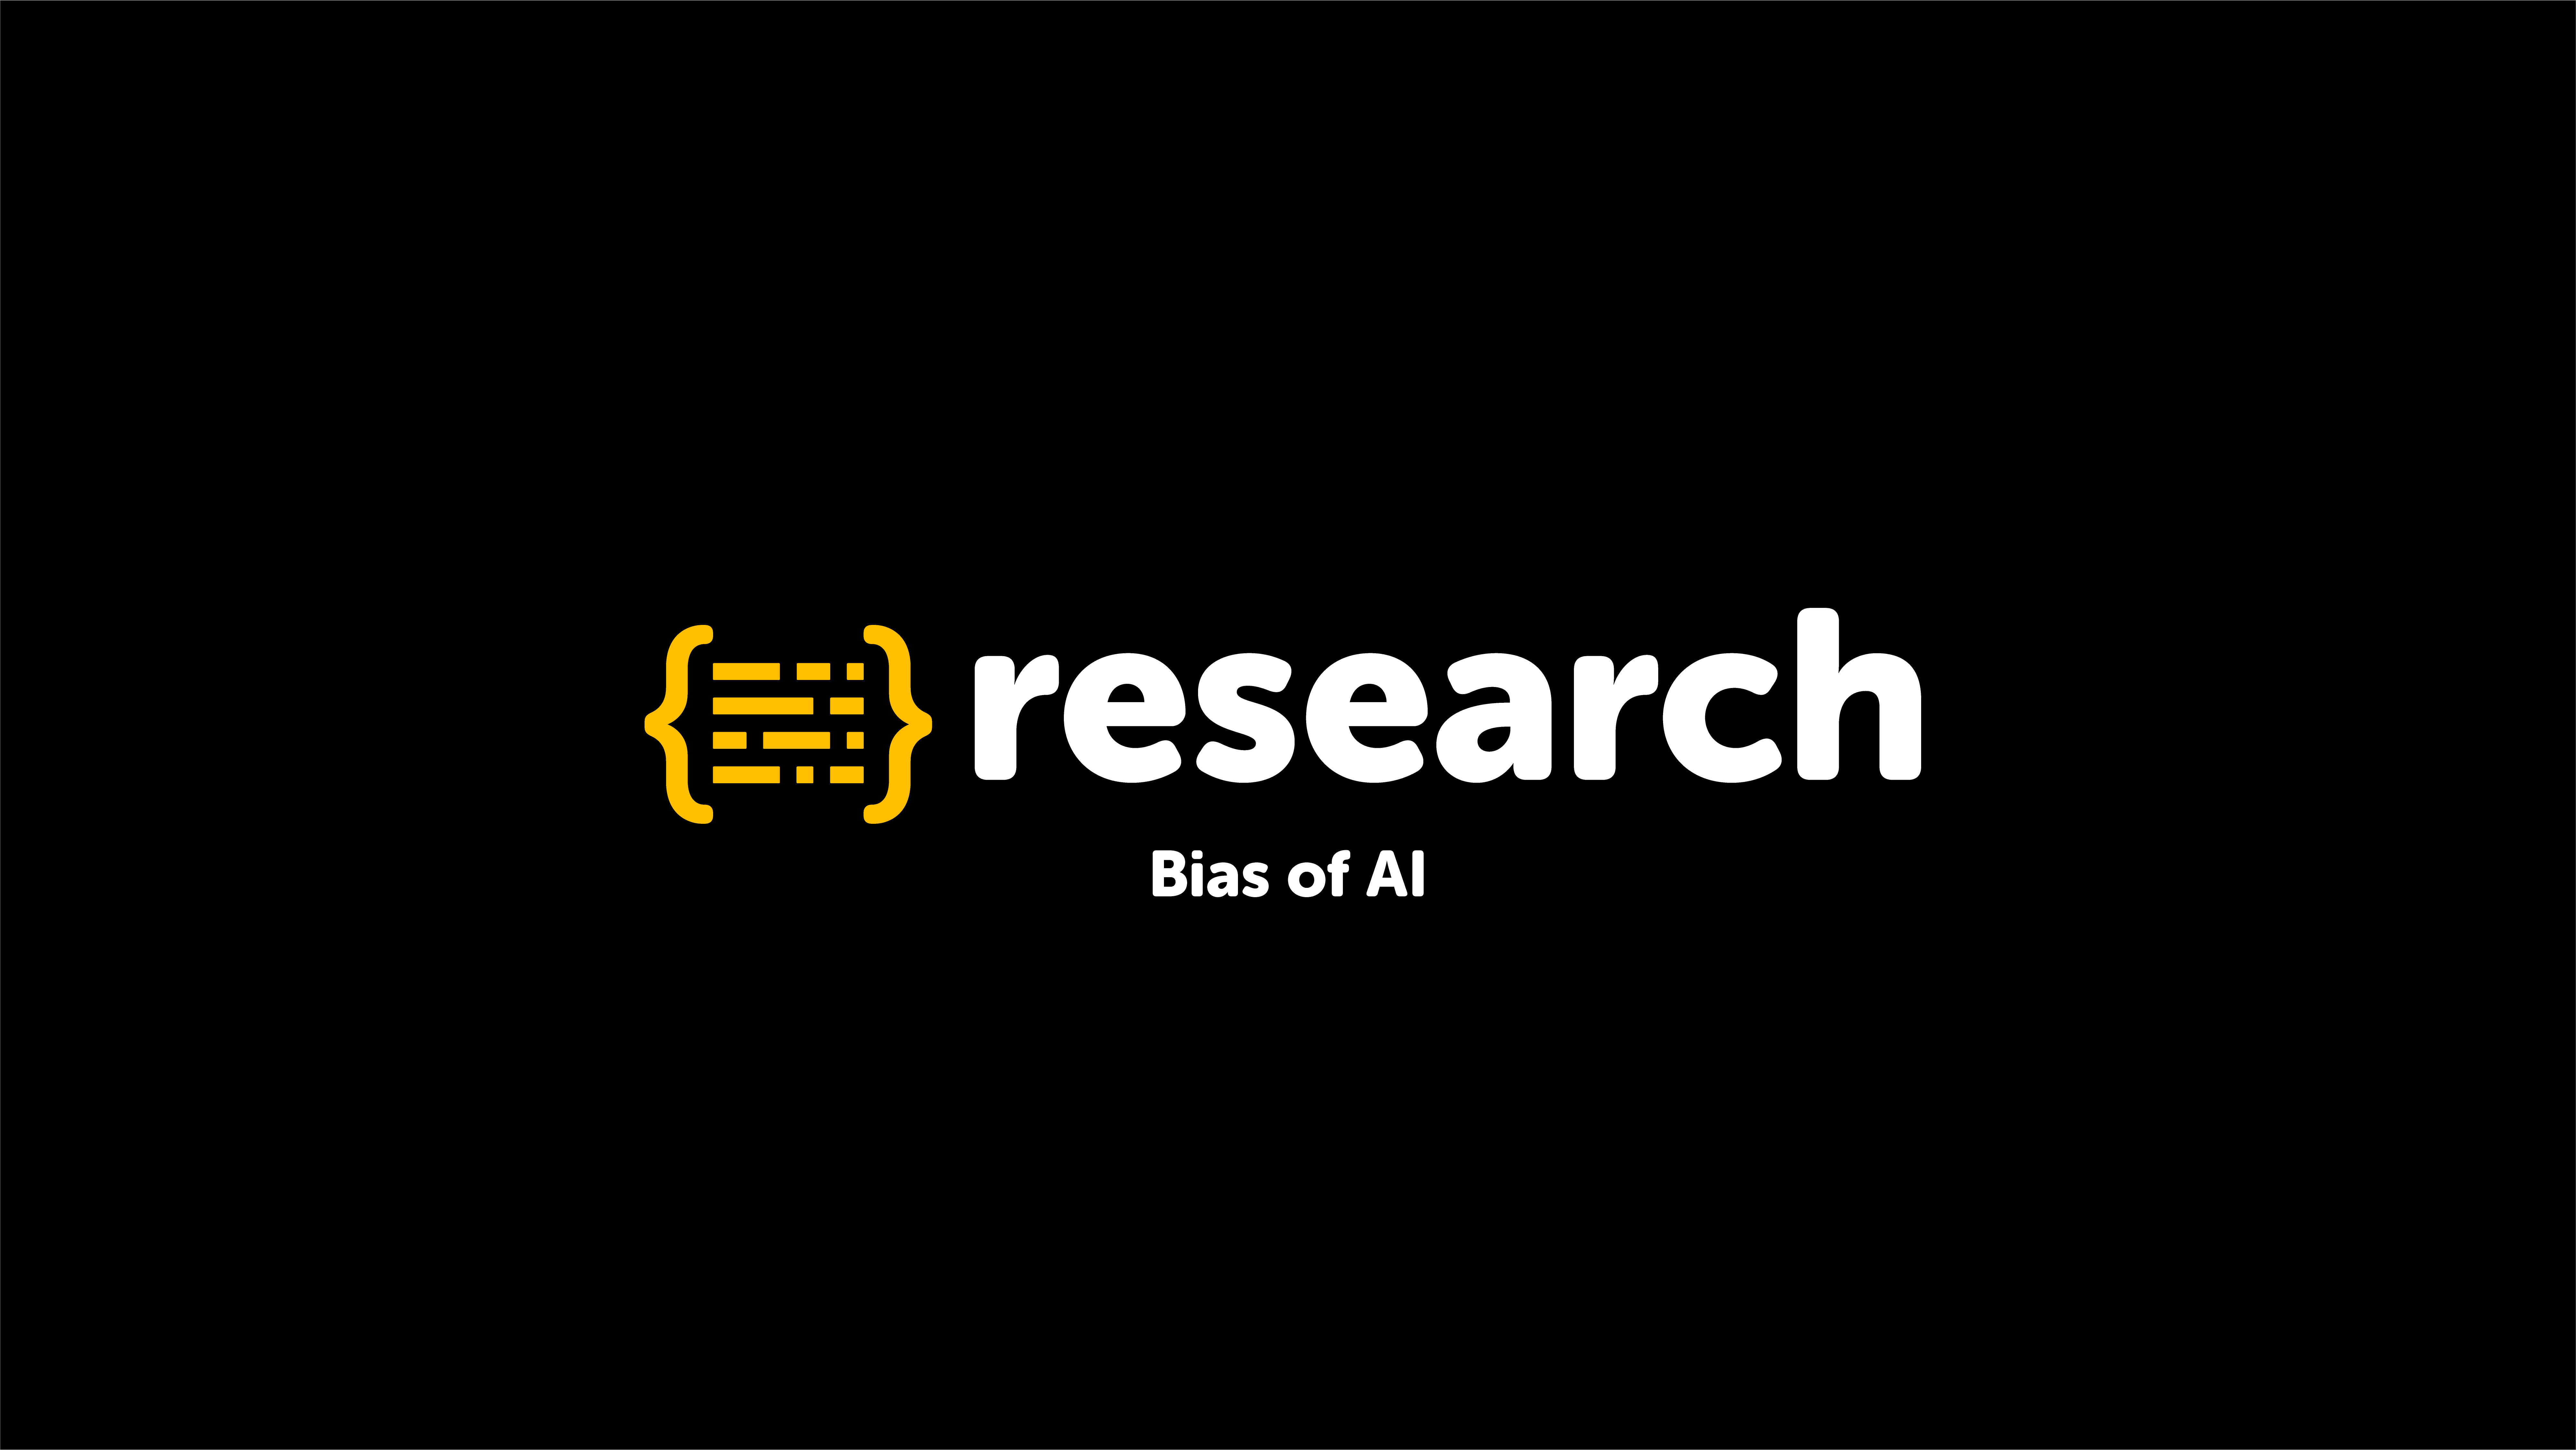 The bias of AI 🤖